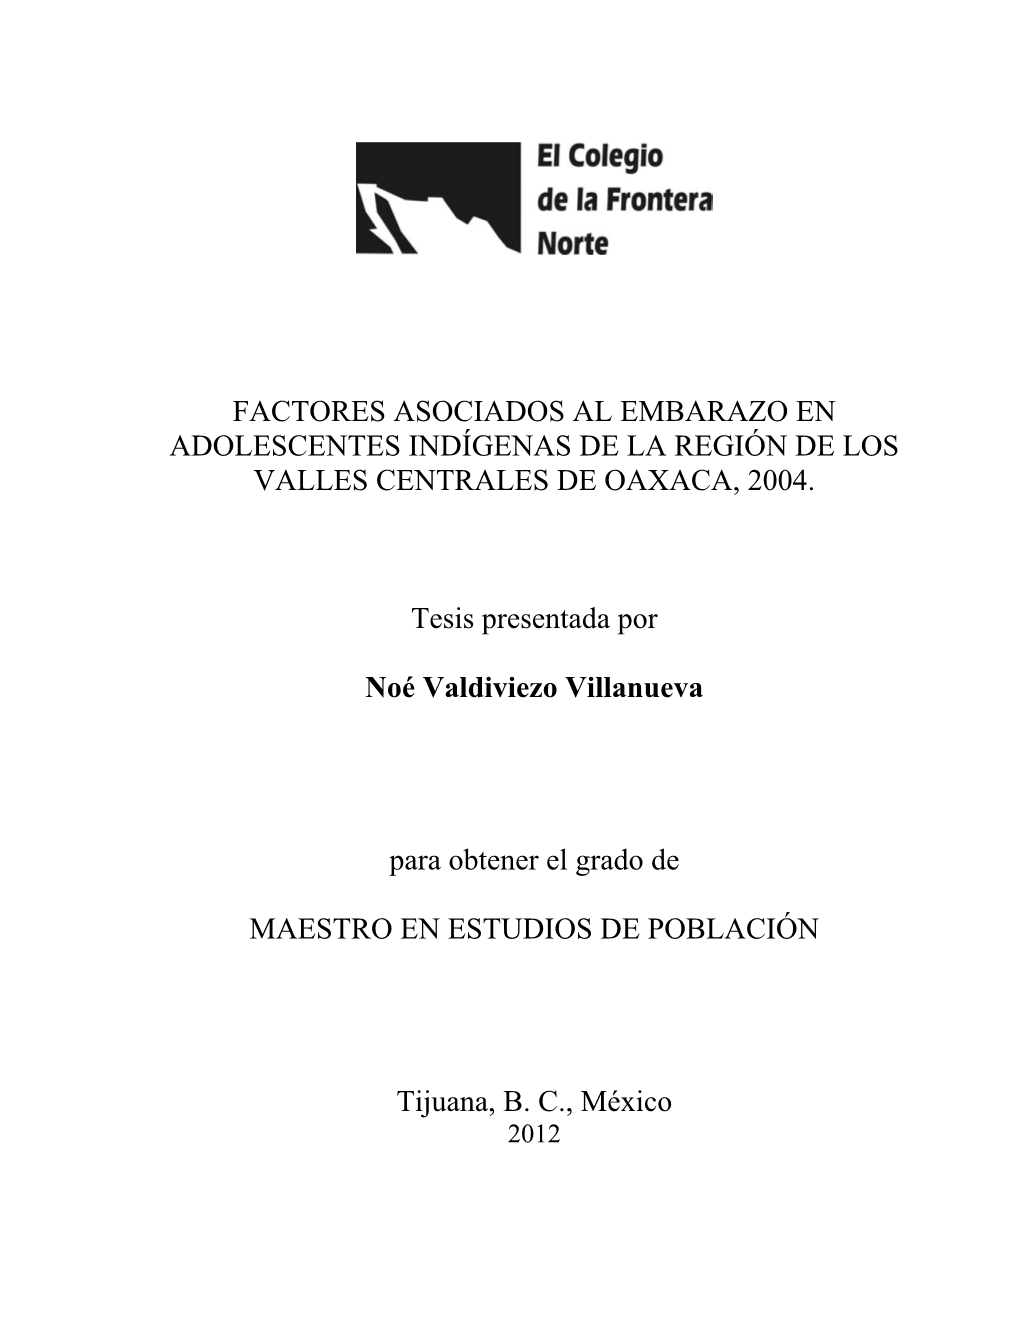 Factores Asociados Al Embarazo En Adolescentes Indígenas De La Región De Los Valles Centrales De Oaxaca, 2004